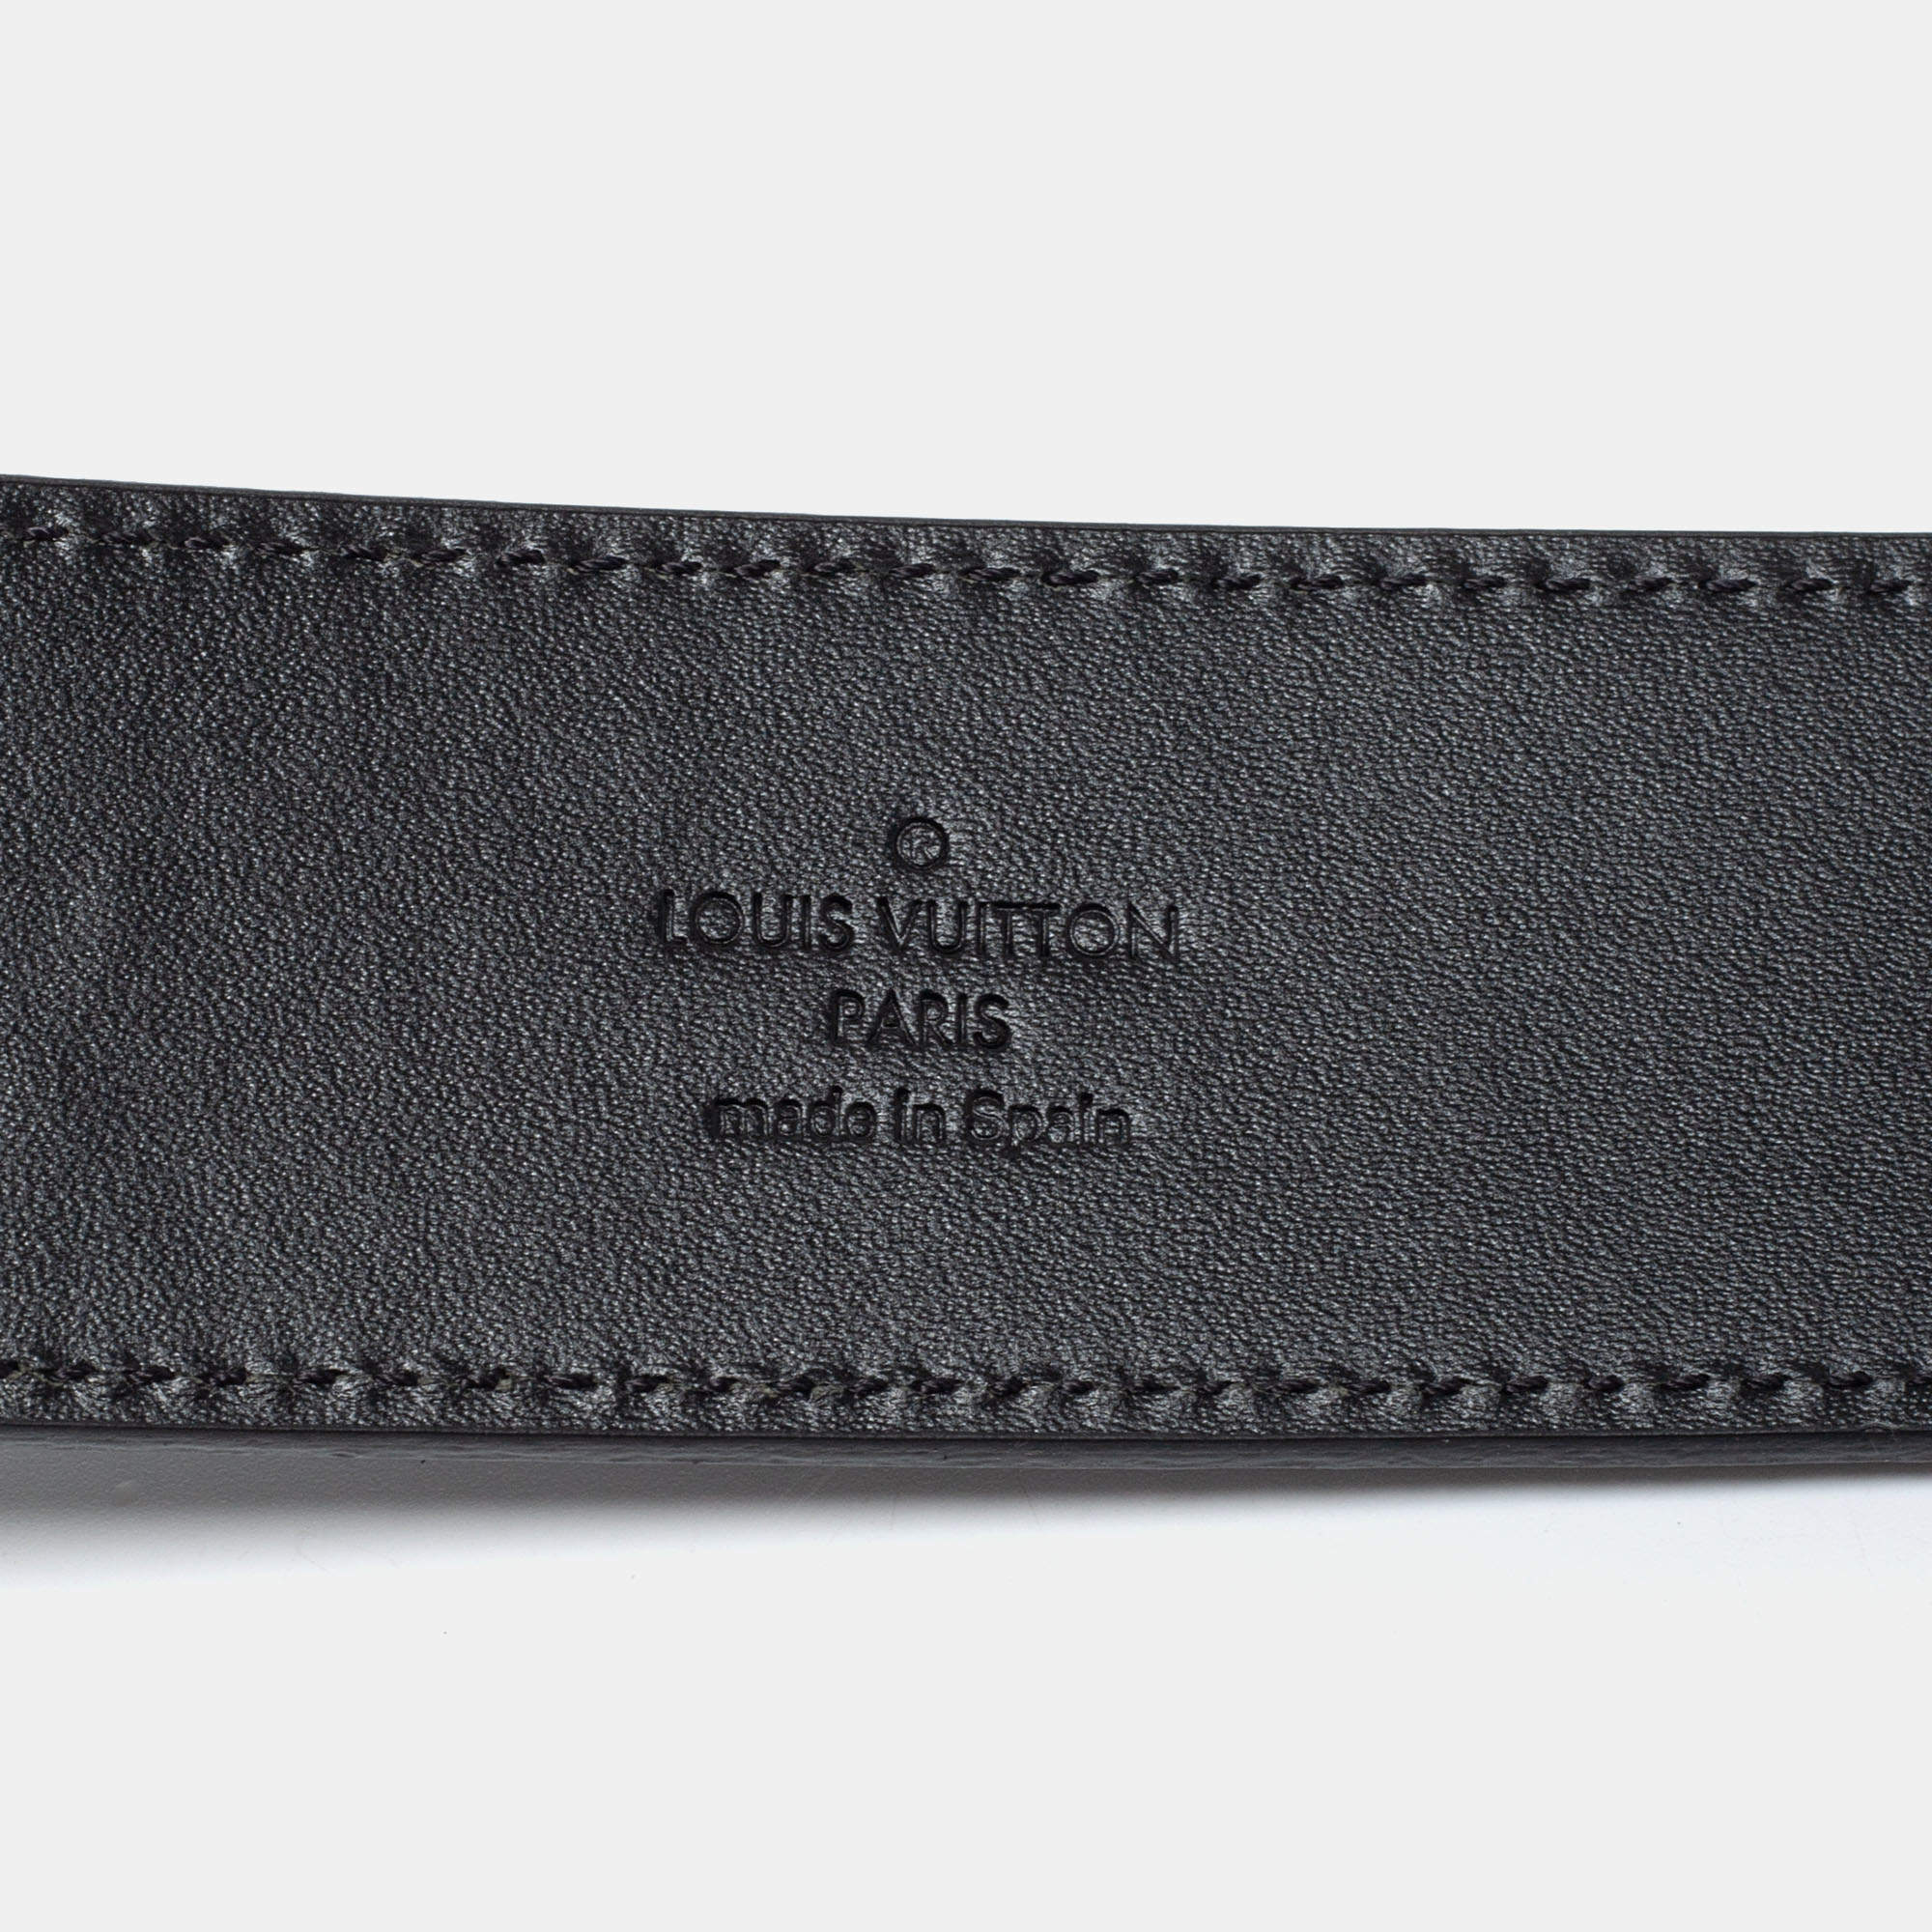 Louis Vuitton 2018 Mini Damier 25mm Belt - Brown Belts, Accessories -  LOU782146